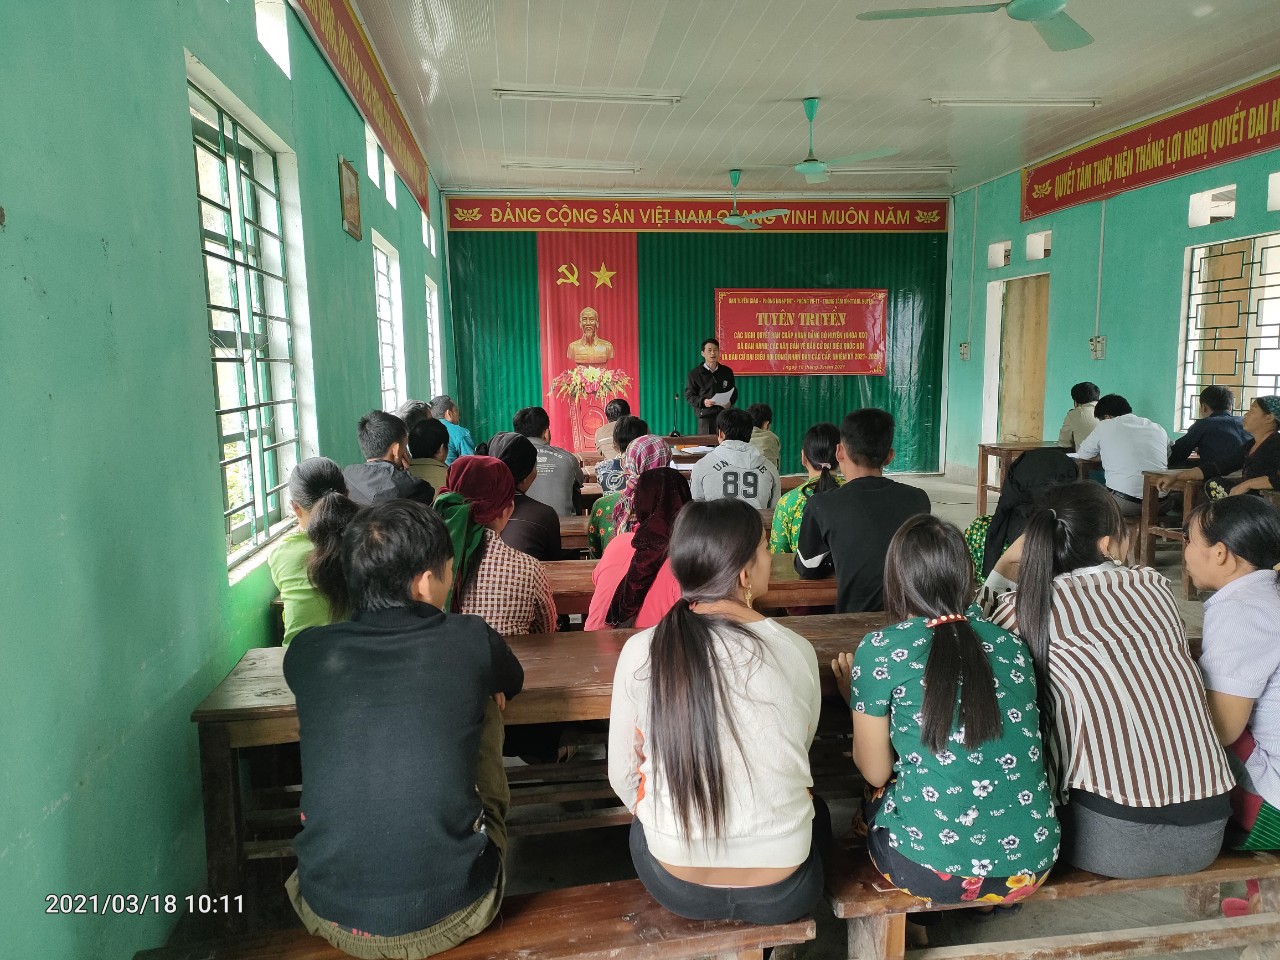 Nghĩa Thuận đẩy mạnh công tác tuyên truyền chào mừng bầu cử đại biểu Quốc hội khóa XV và bầu cử đại biểu HĐND các cấp nhaiệm kỳ 2021-2026